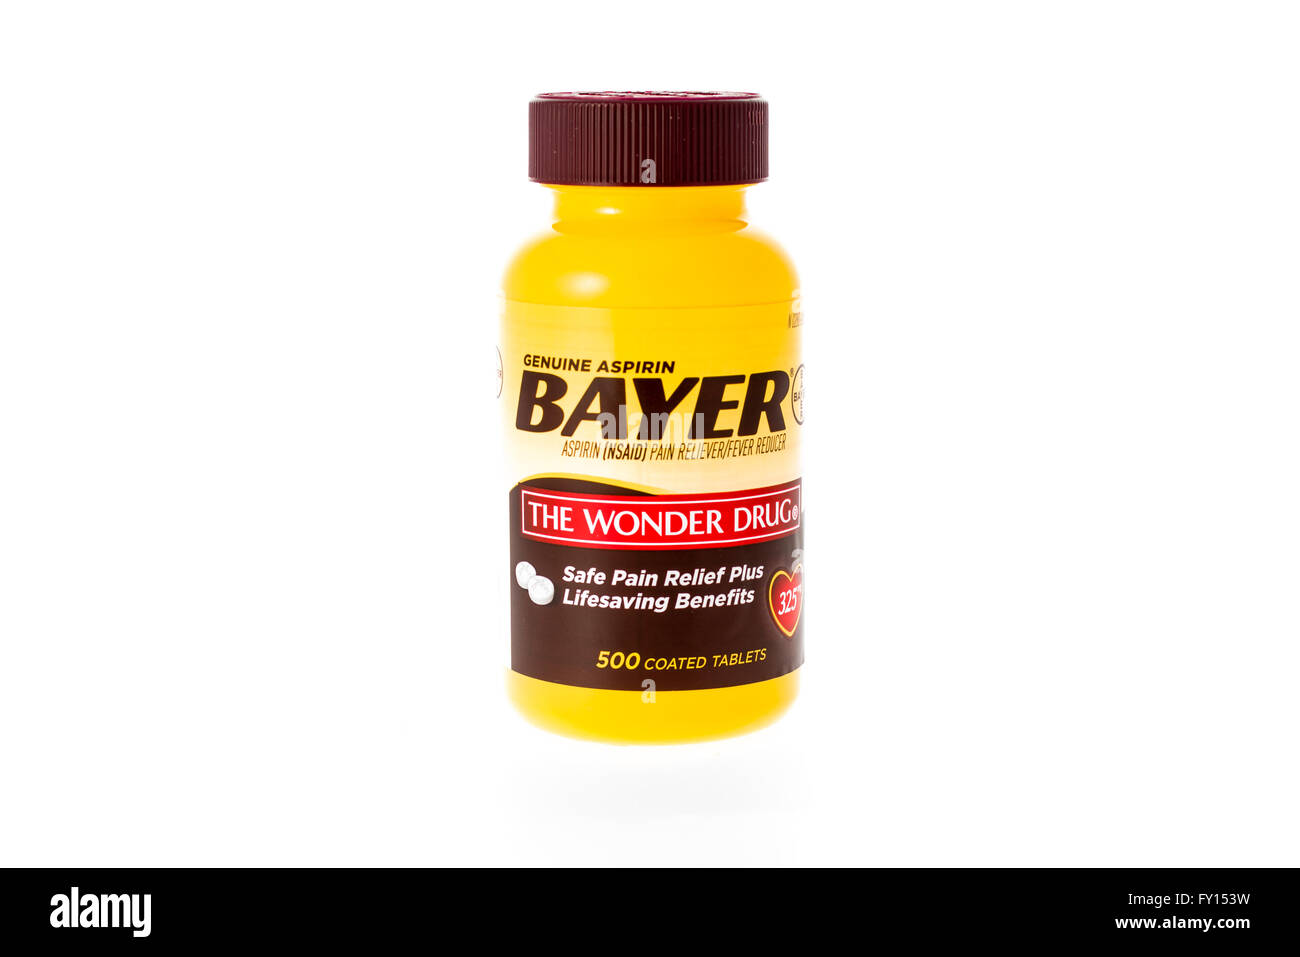 Winneconne, WI - 9 Février 2015 : Bouteille d'aspirine Bayer 'Le Miracle'. Asperin participe à l'allégement de la douleur. Banque D'Images